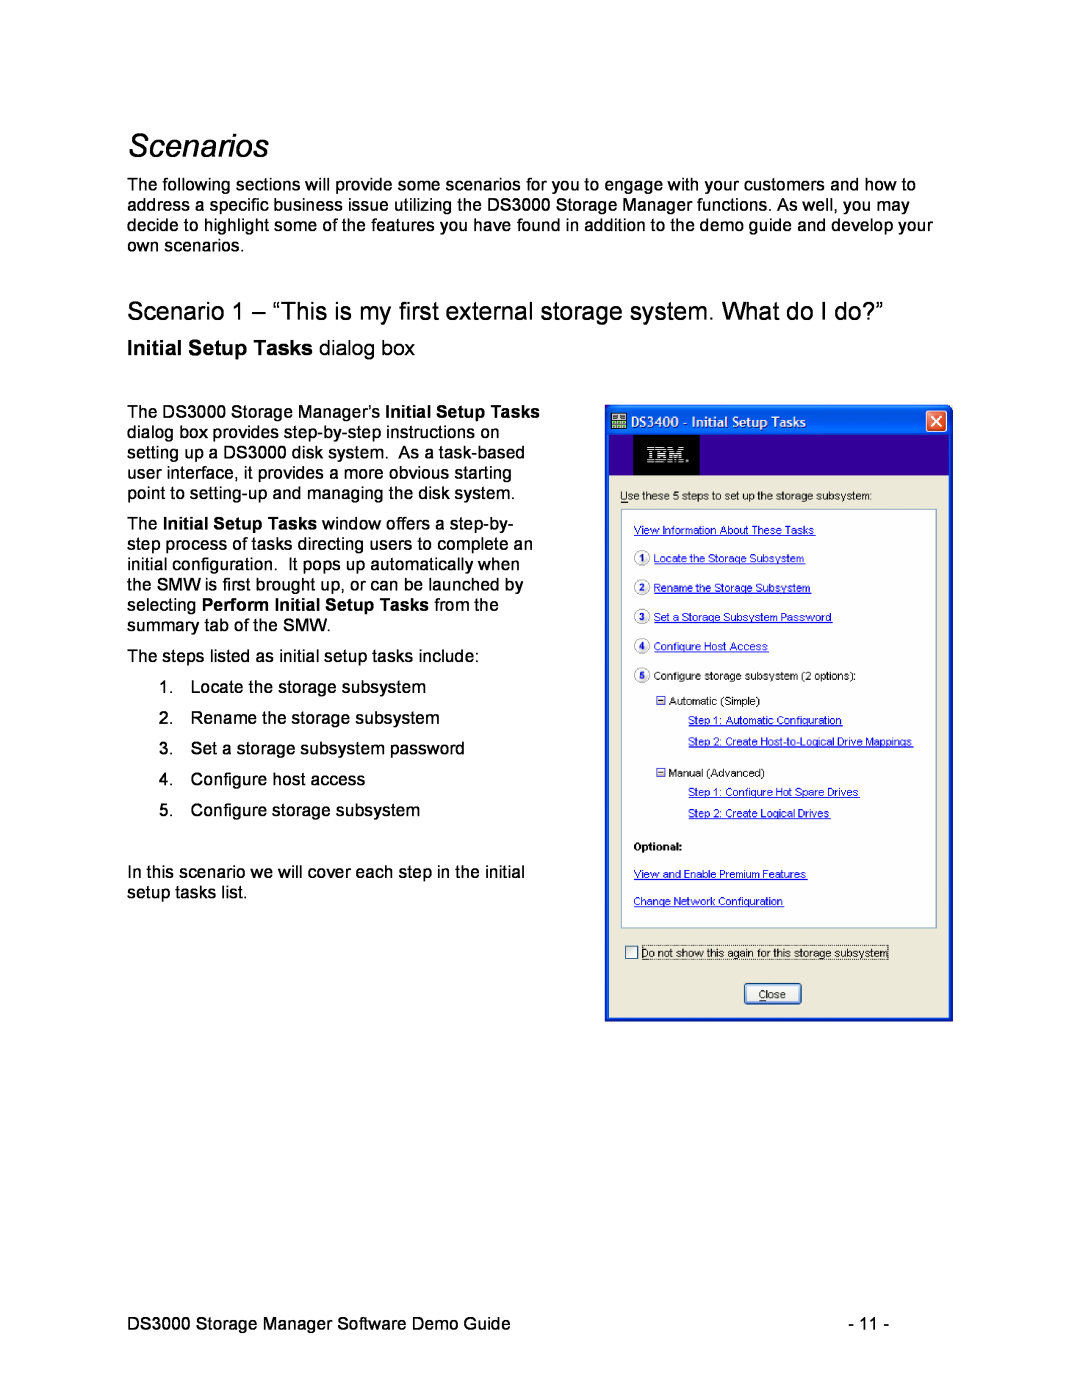 IBM DS3000 manual Scenarios, Initial Setup Tasks dialog box 